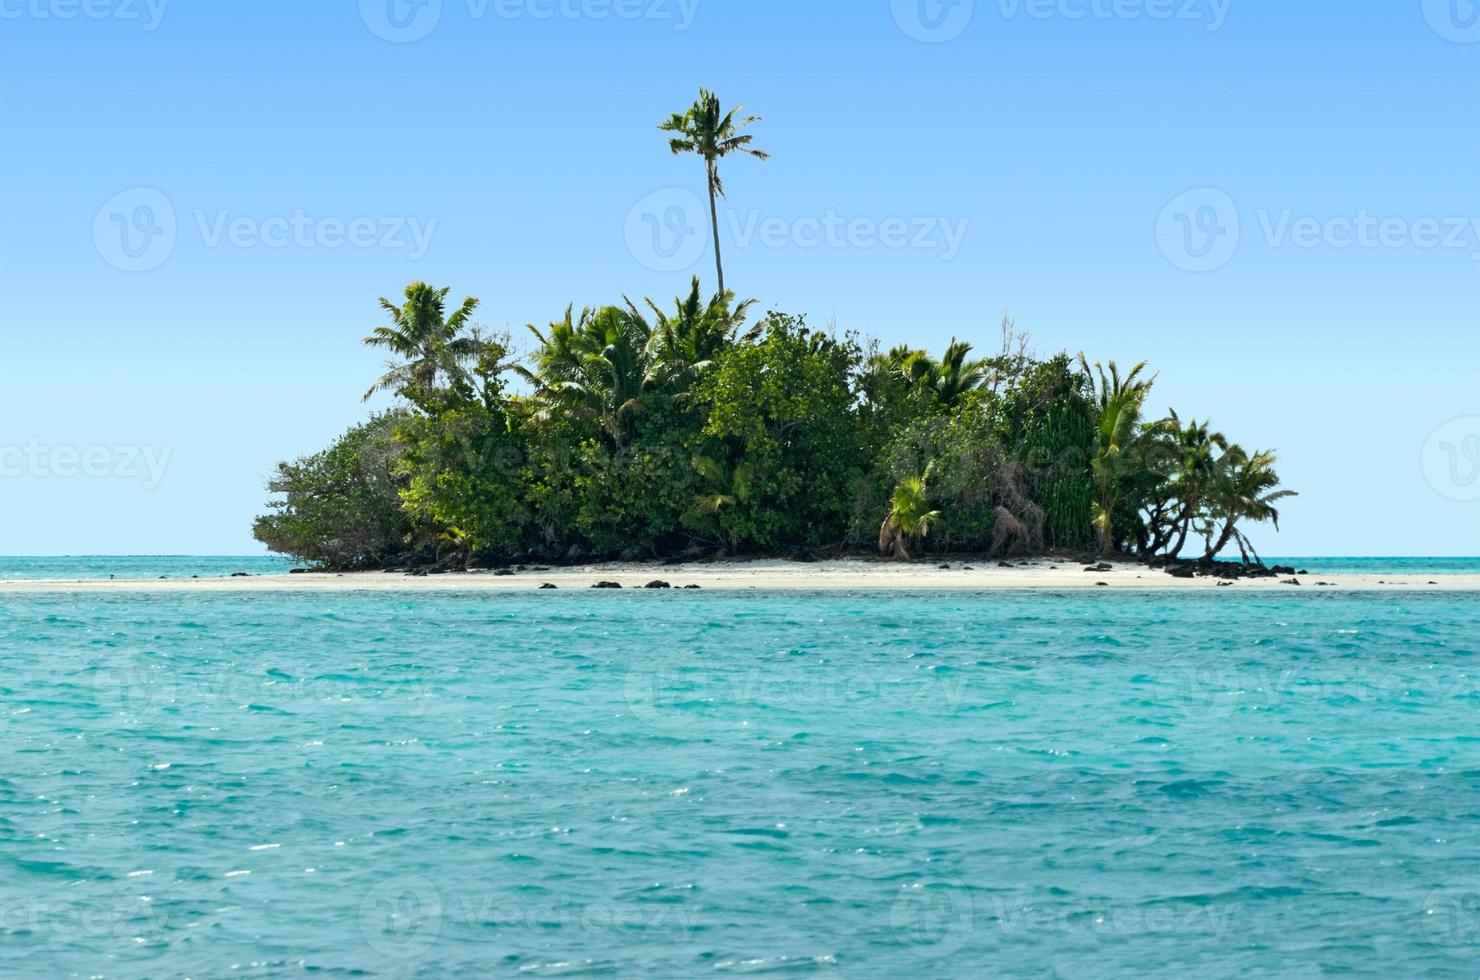 paesaggio dell'isola di rapota nelle isole Cook laguna di aitutaki foto